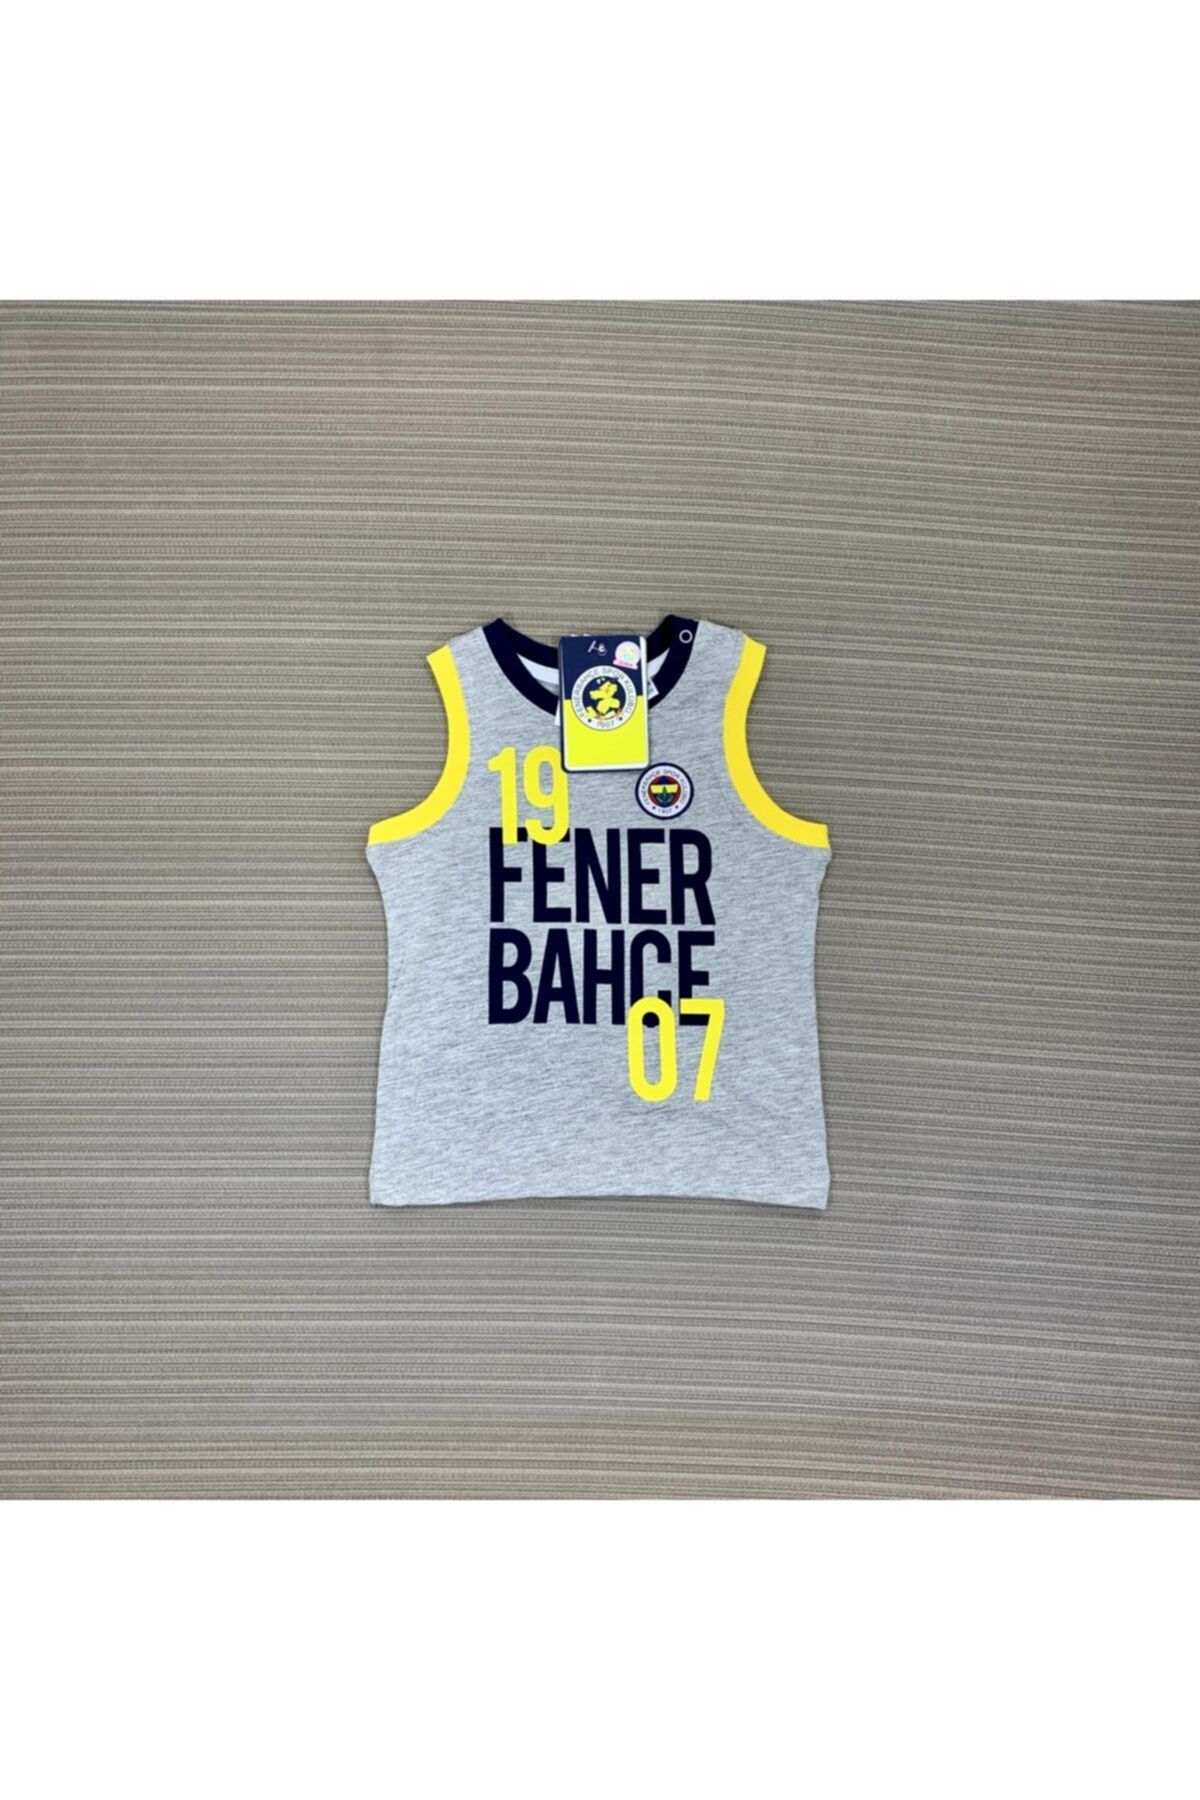 Fenerbahçe Fenerbahçe Erkek Bebek Atlet 3-18 Ay